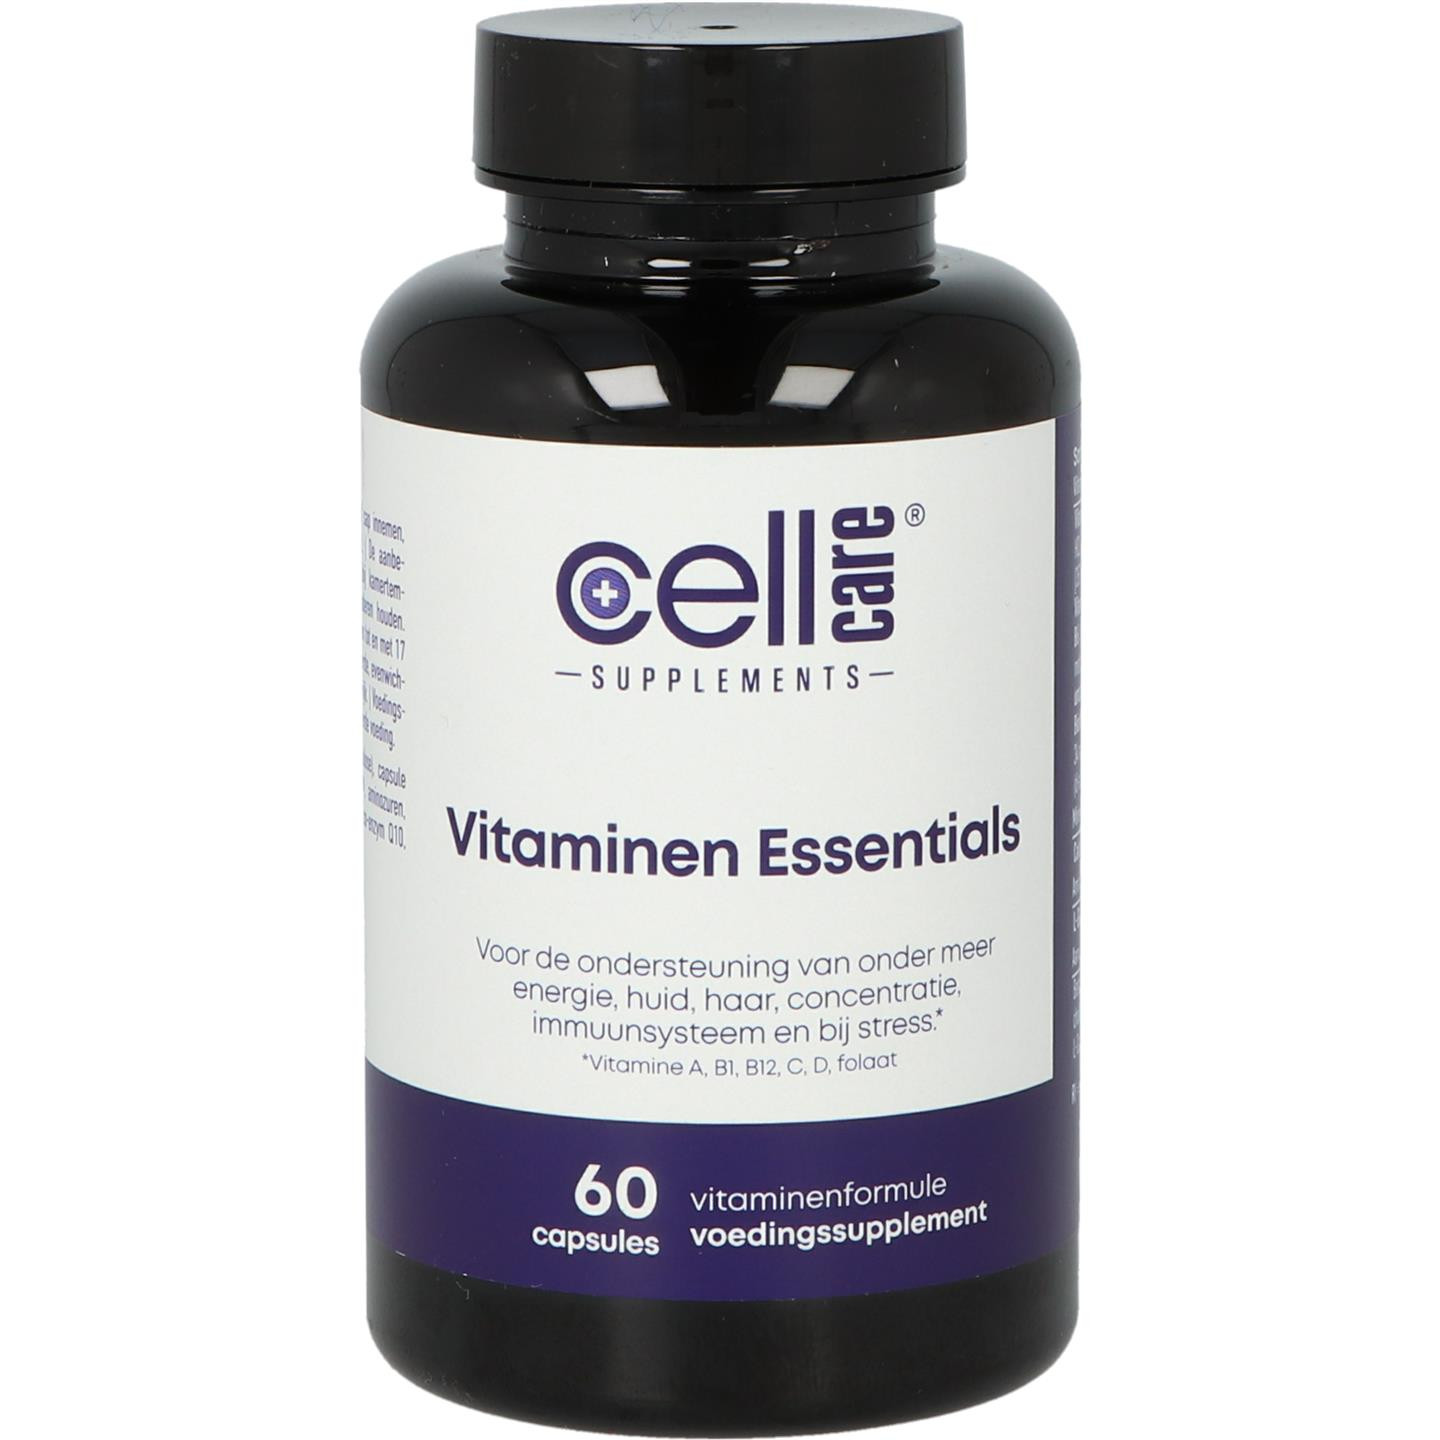 Vitamin Essentials